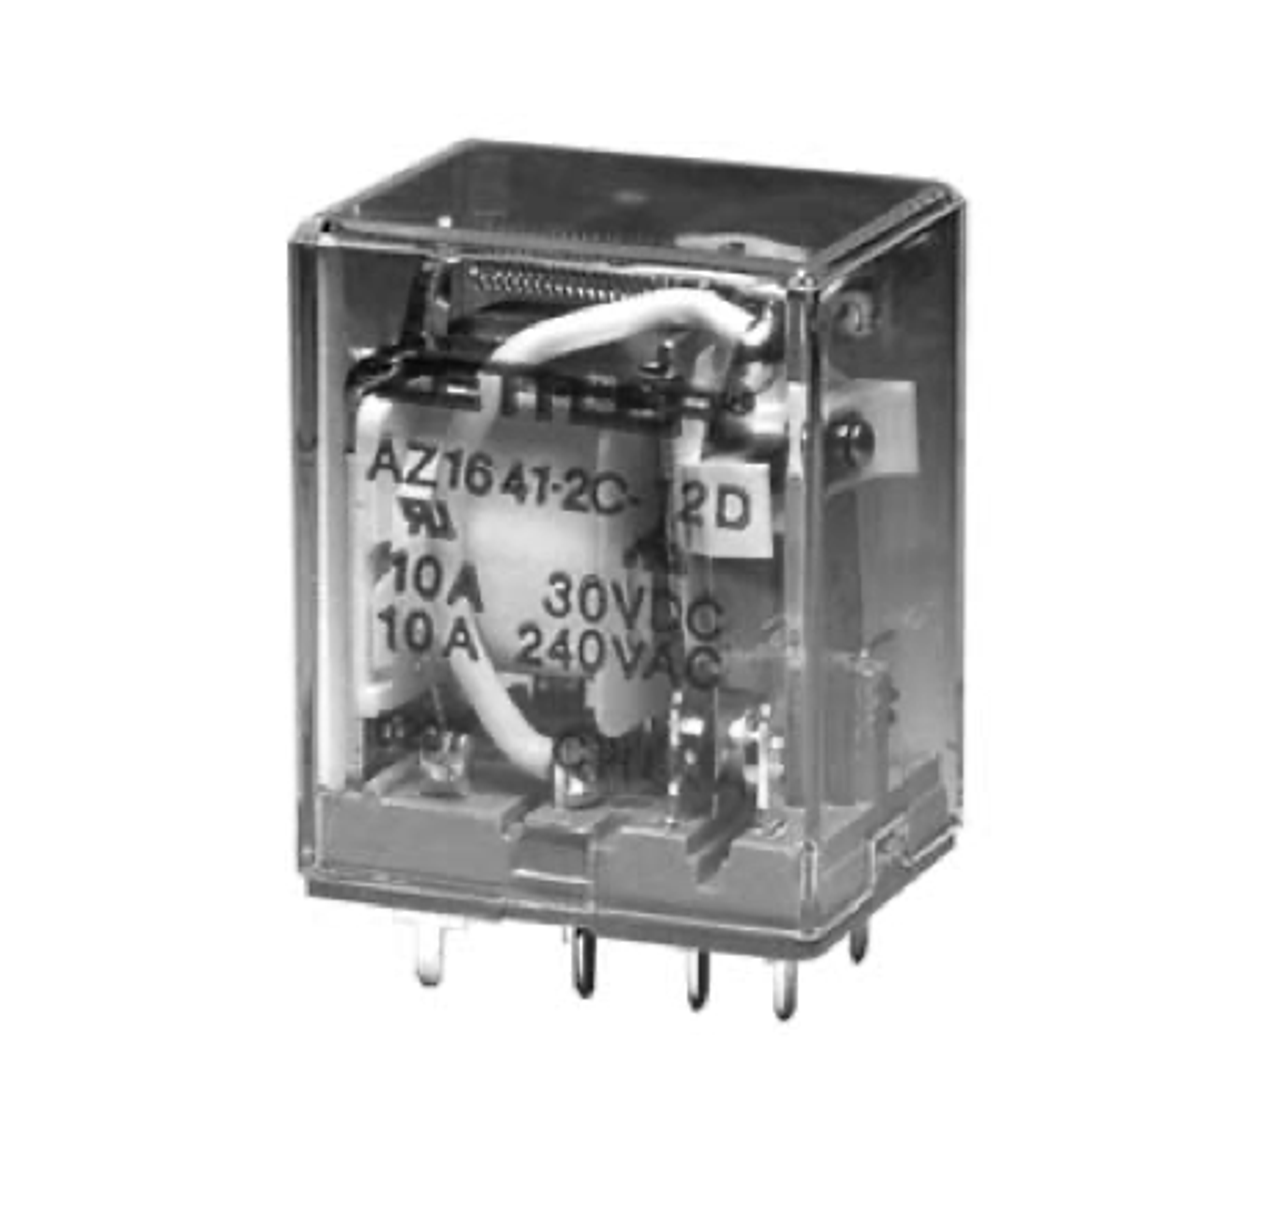 American Zettler AZ1641-4C-6A Power Relay